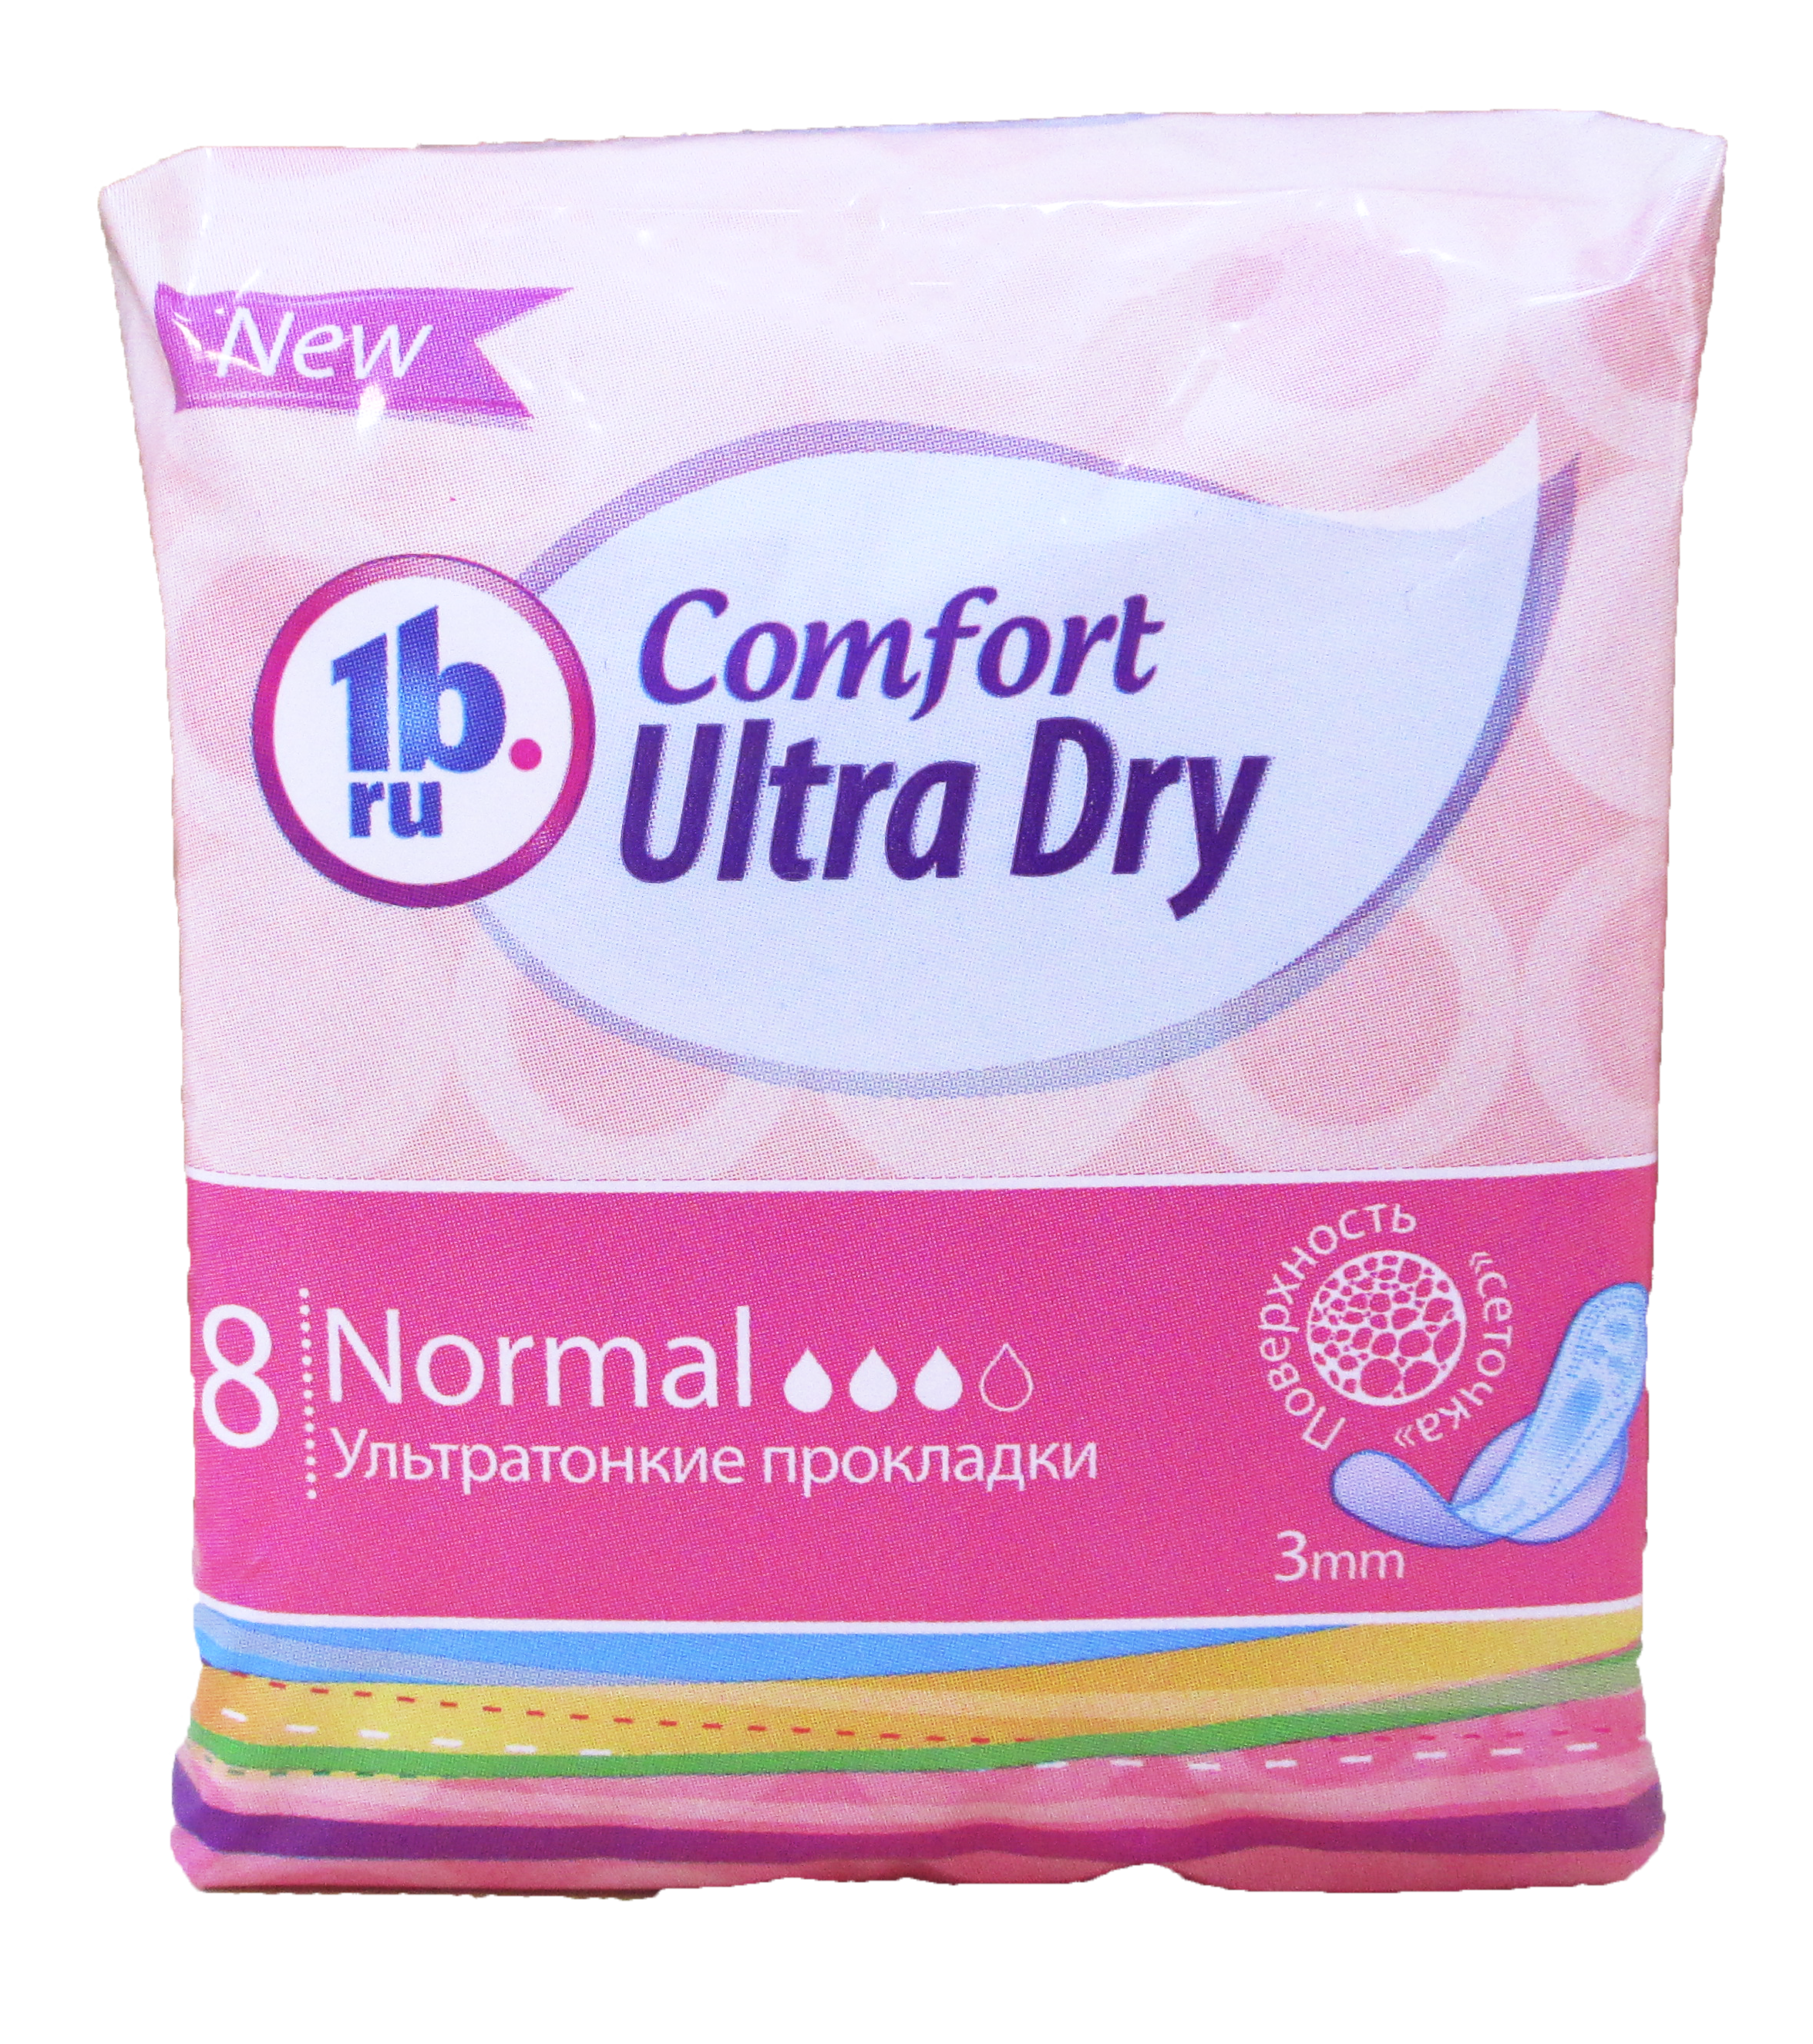 Comfort 1b.ru Dry 8 шт. ультратонкие прокл.